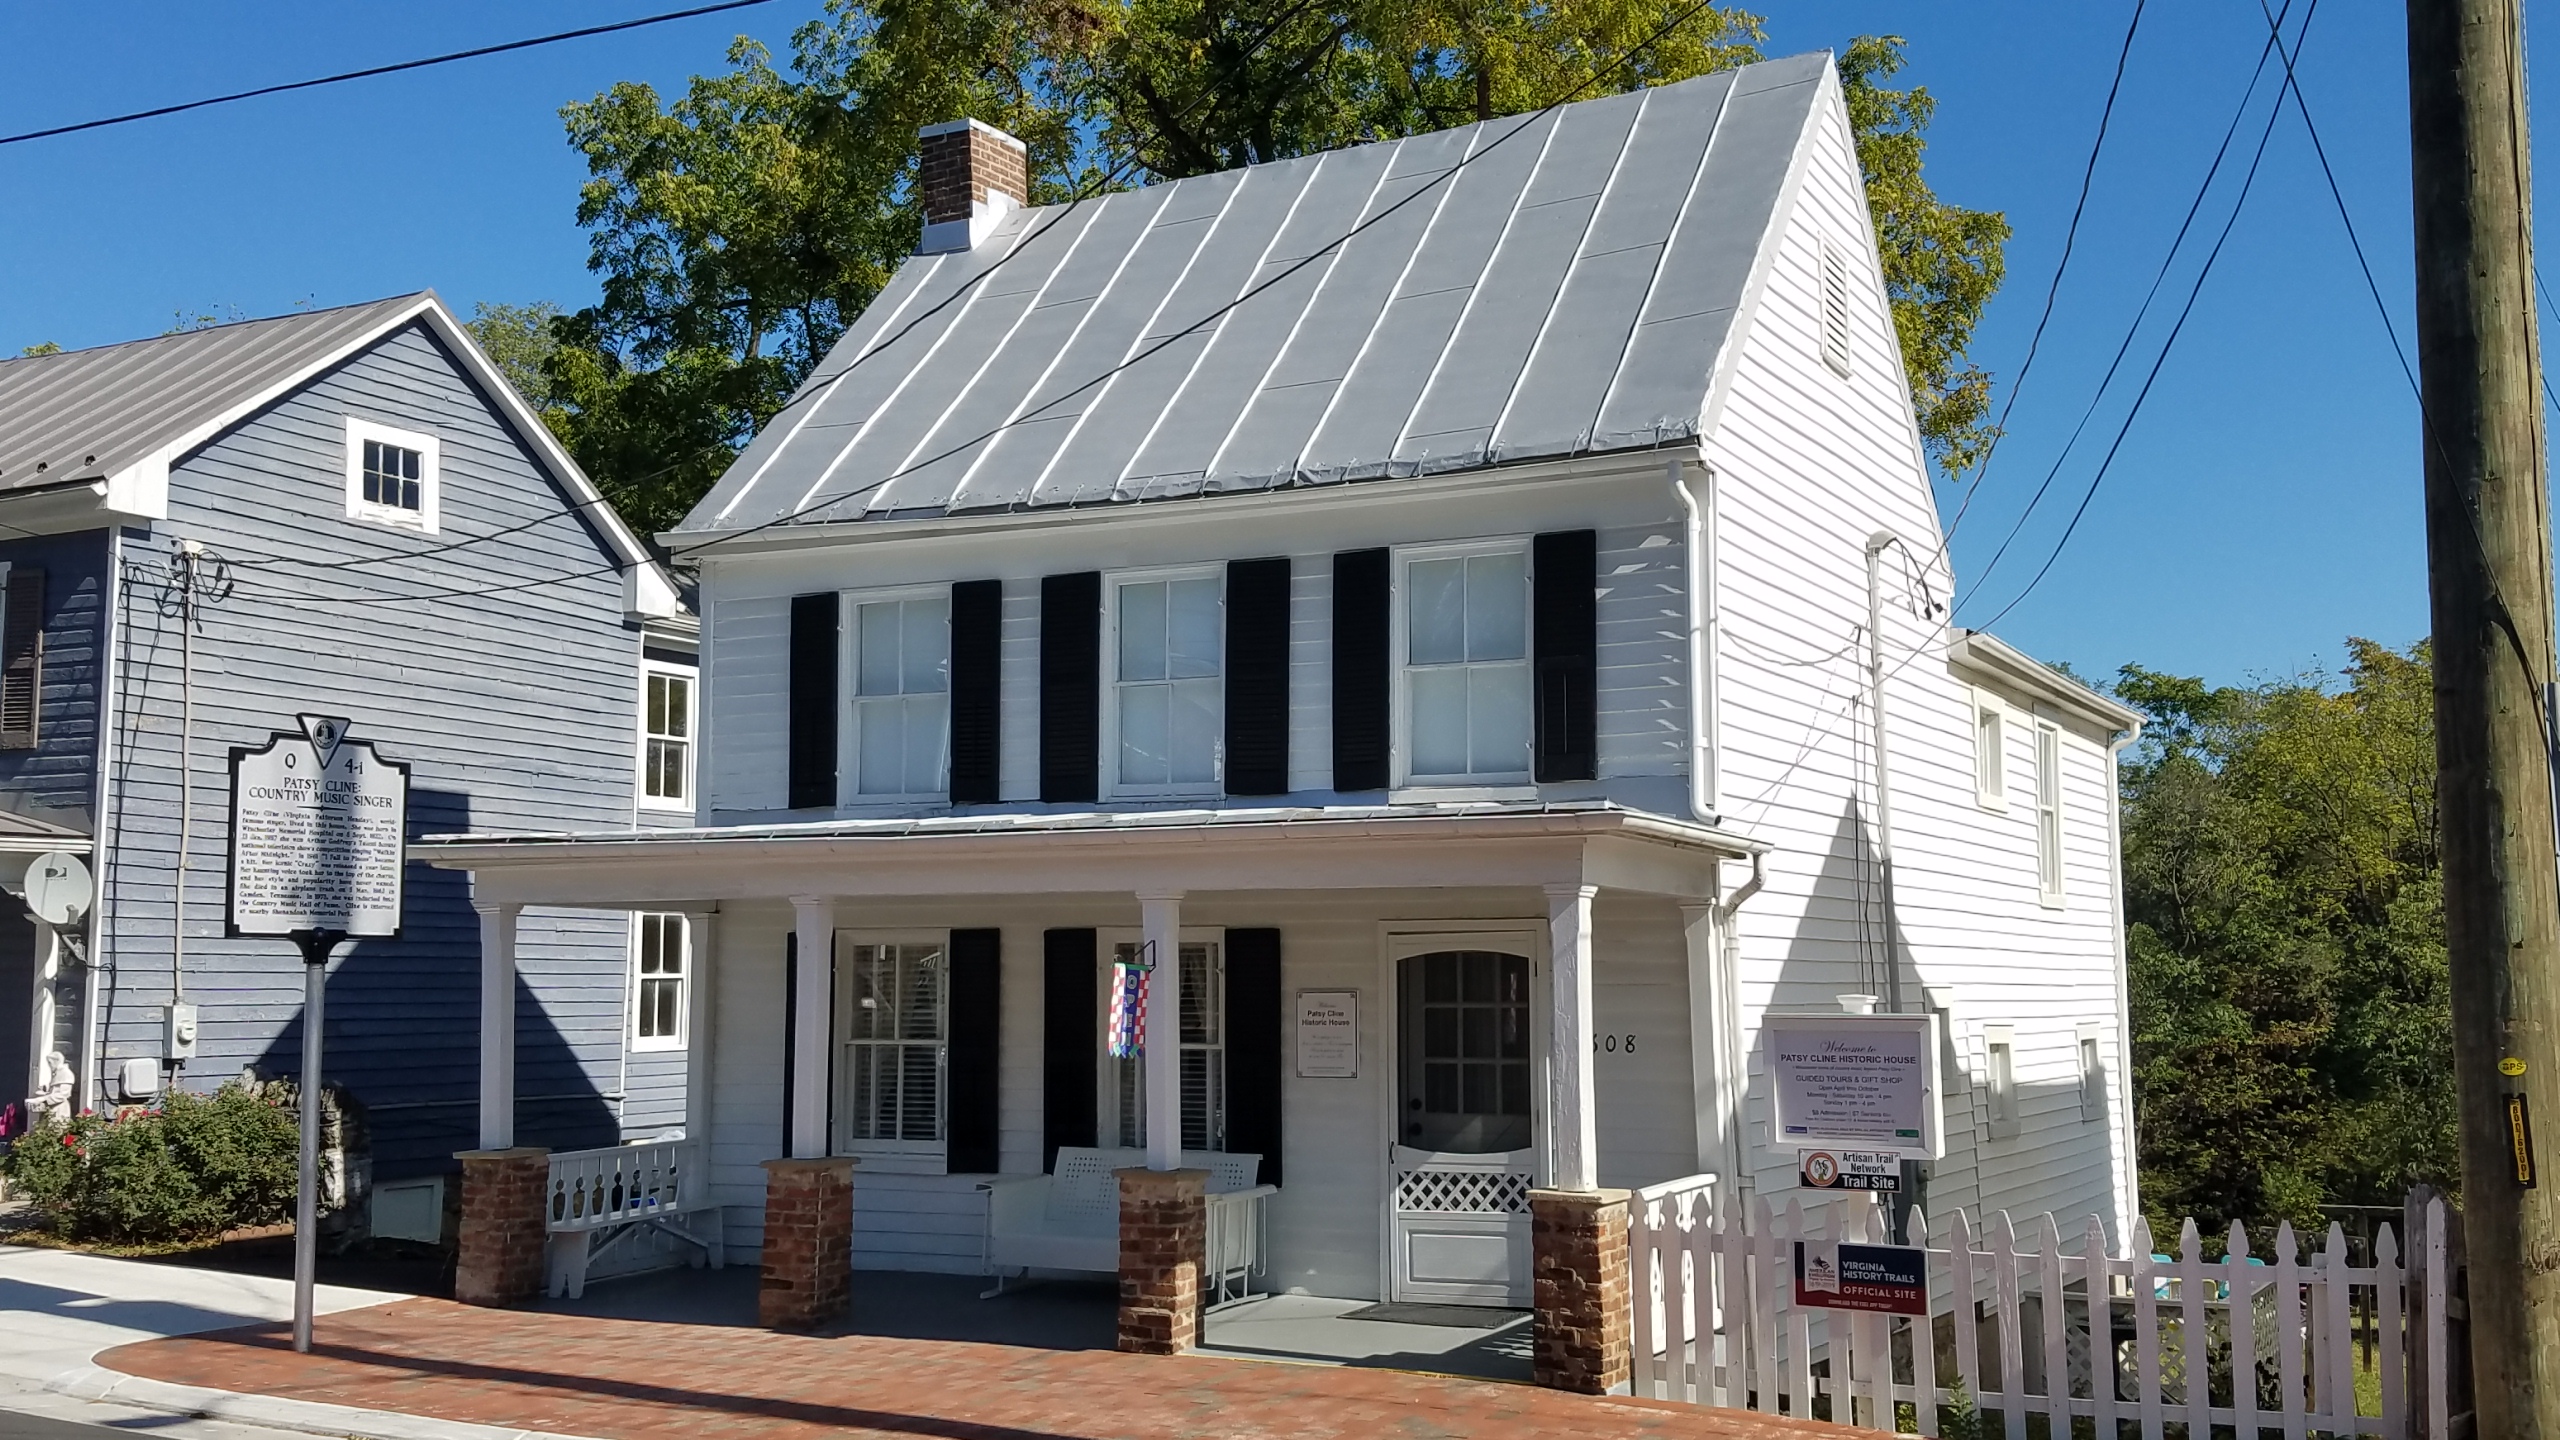 Patsy Cline Historic House, Winchester VA